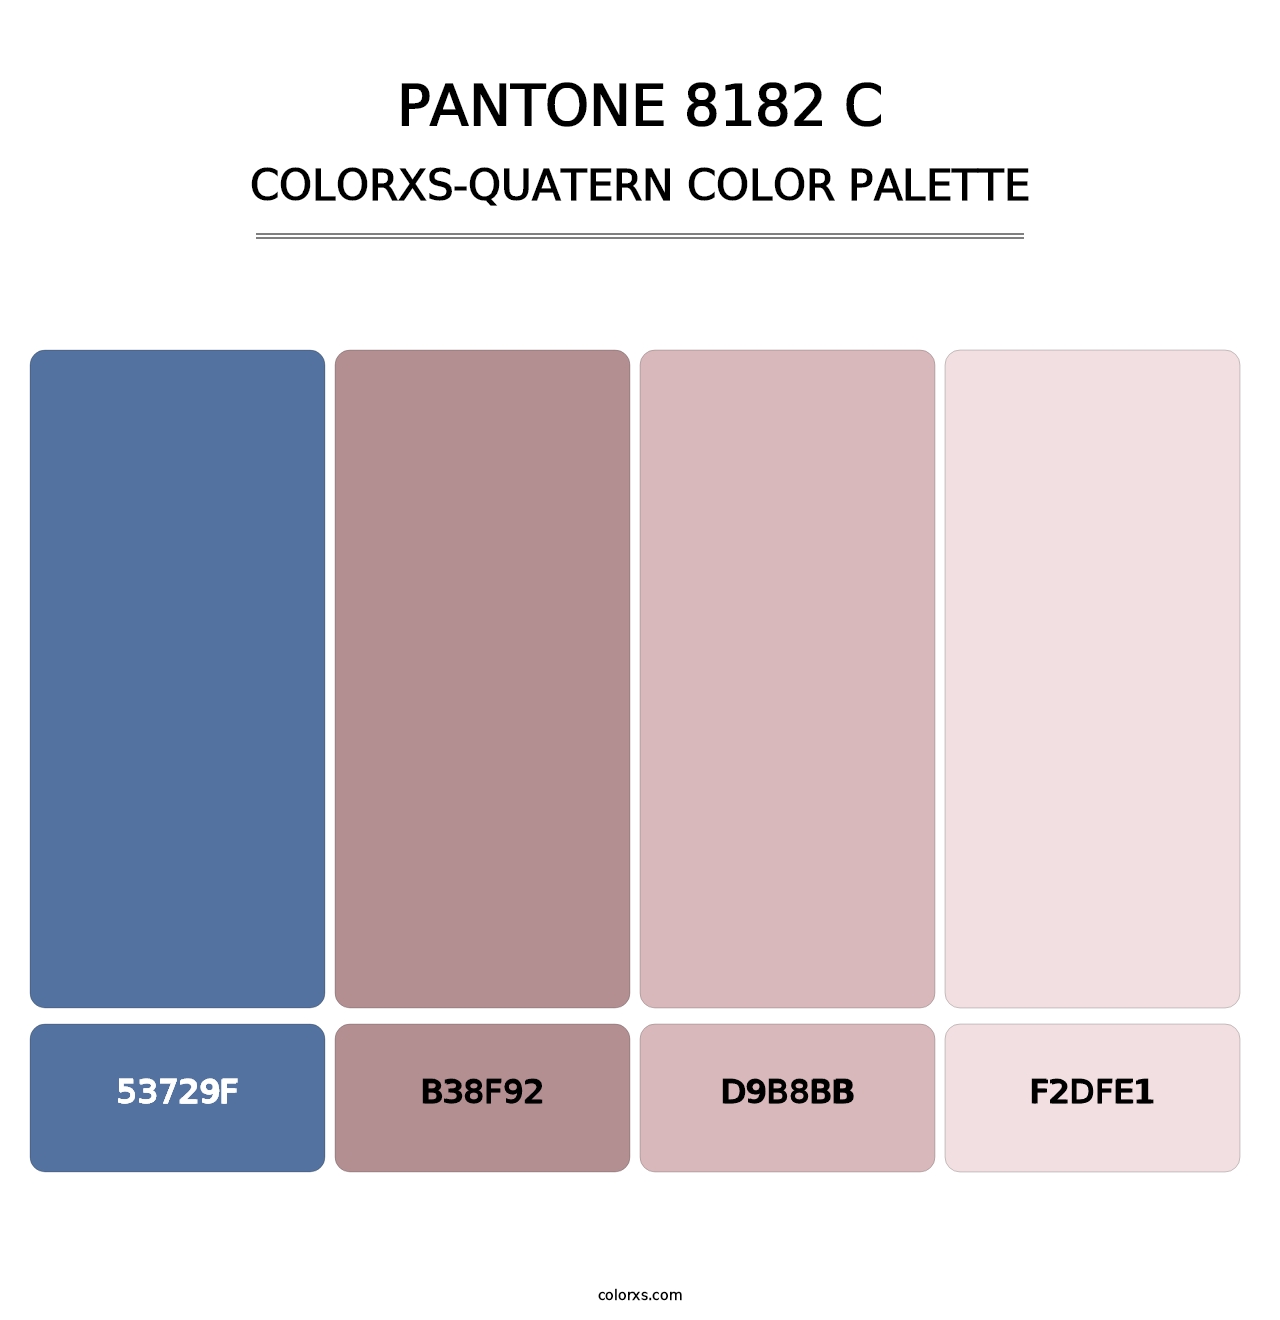 PANTONE 8182 C - Colorxs Quatern Palette